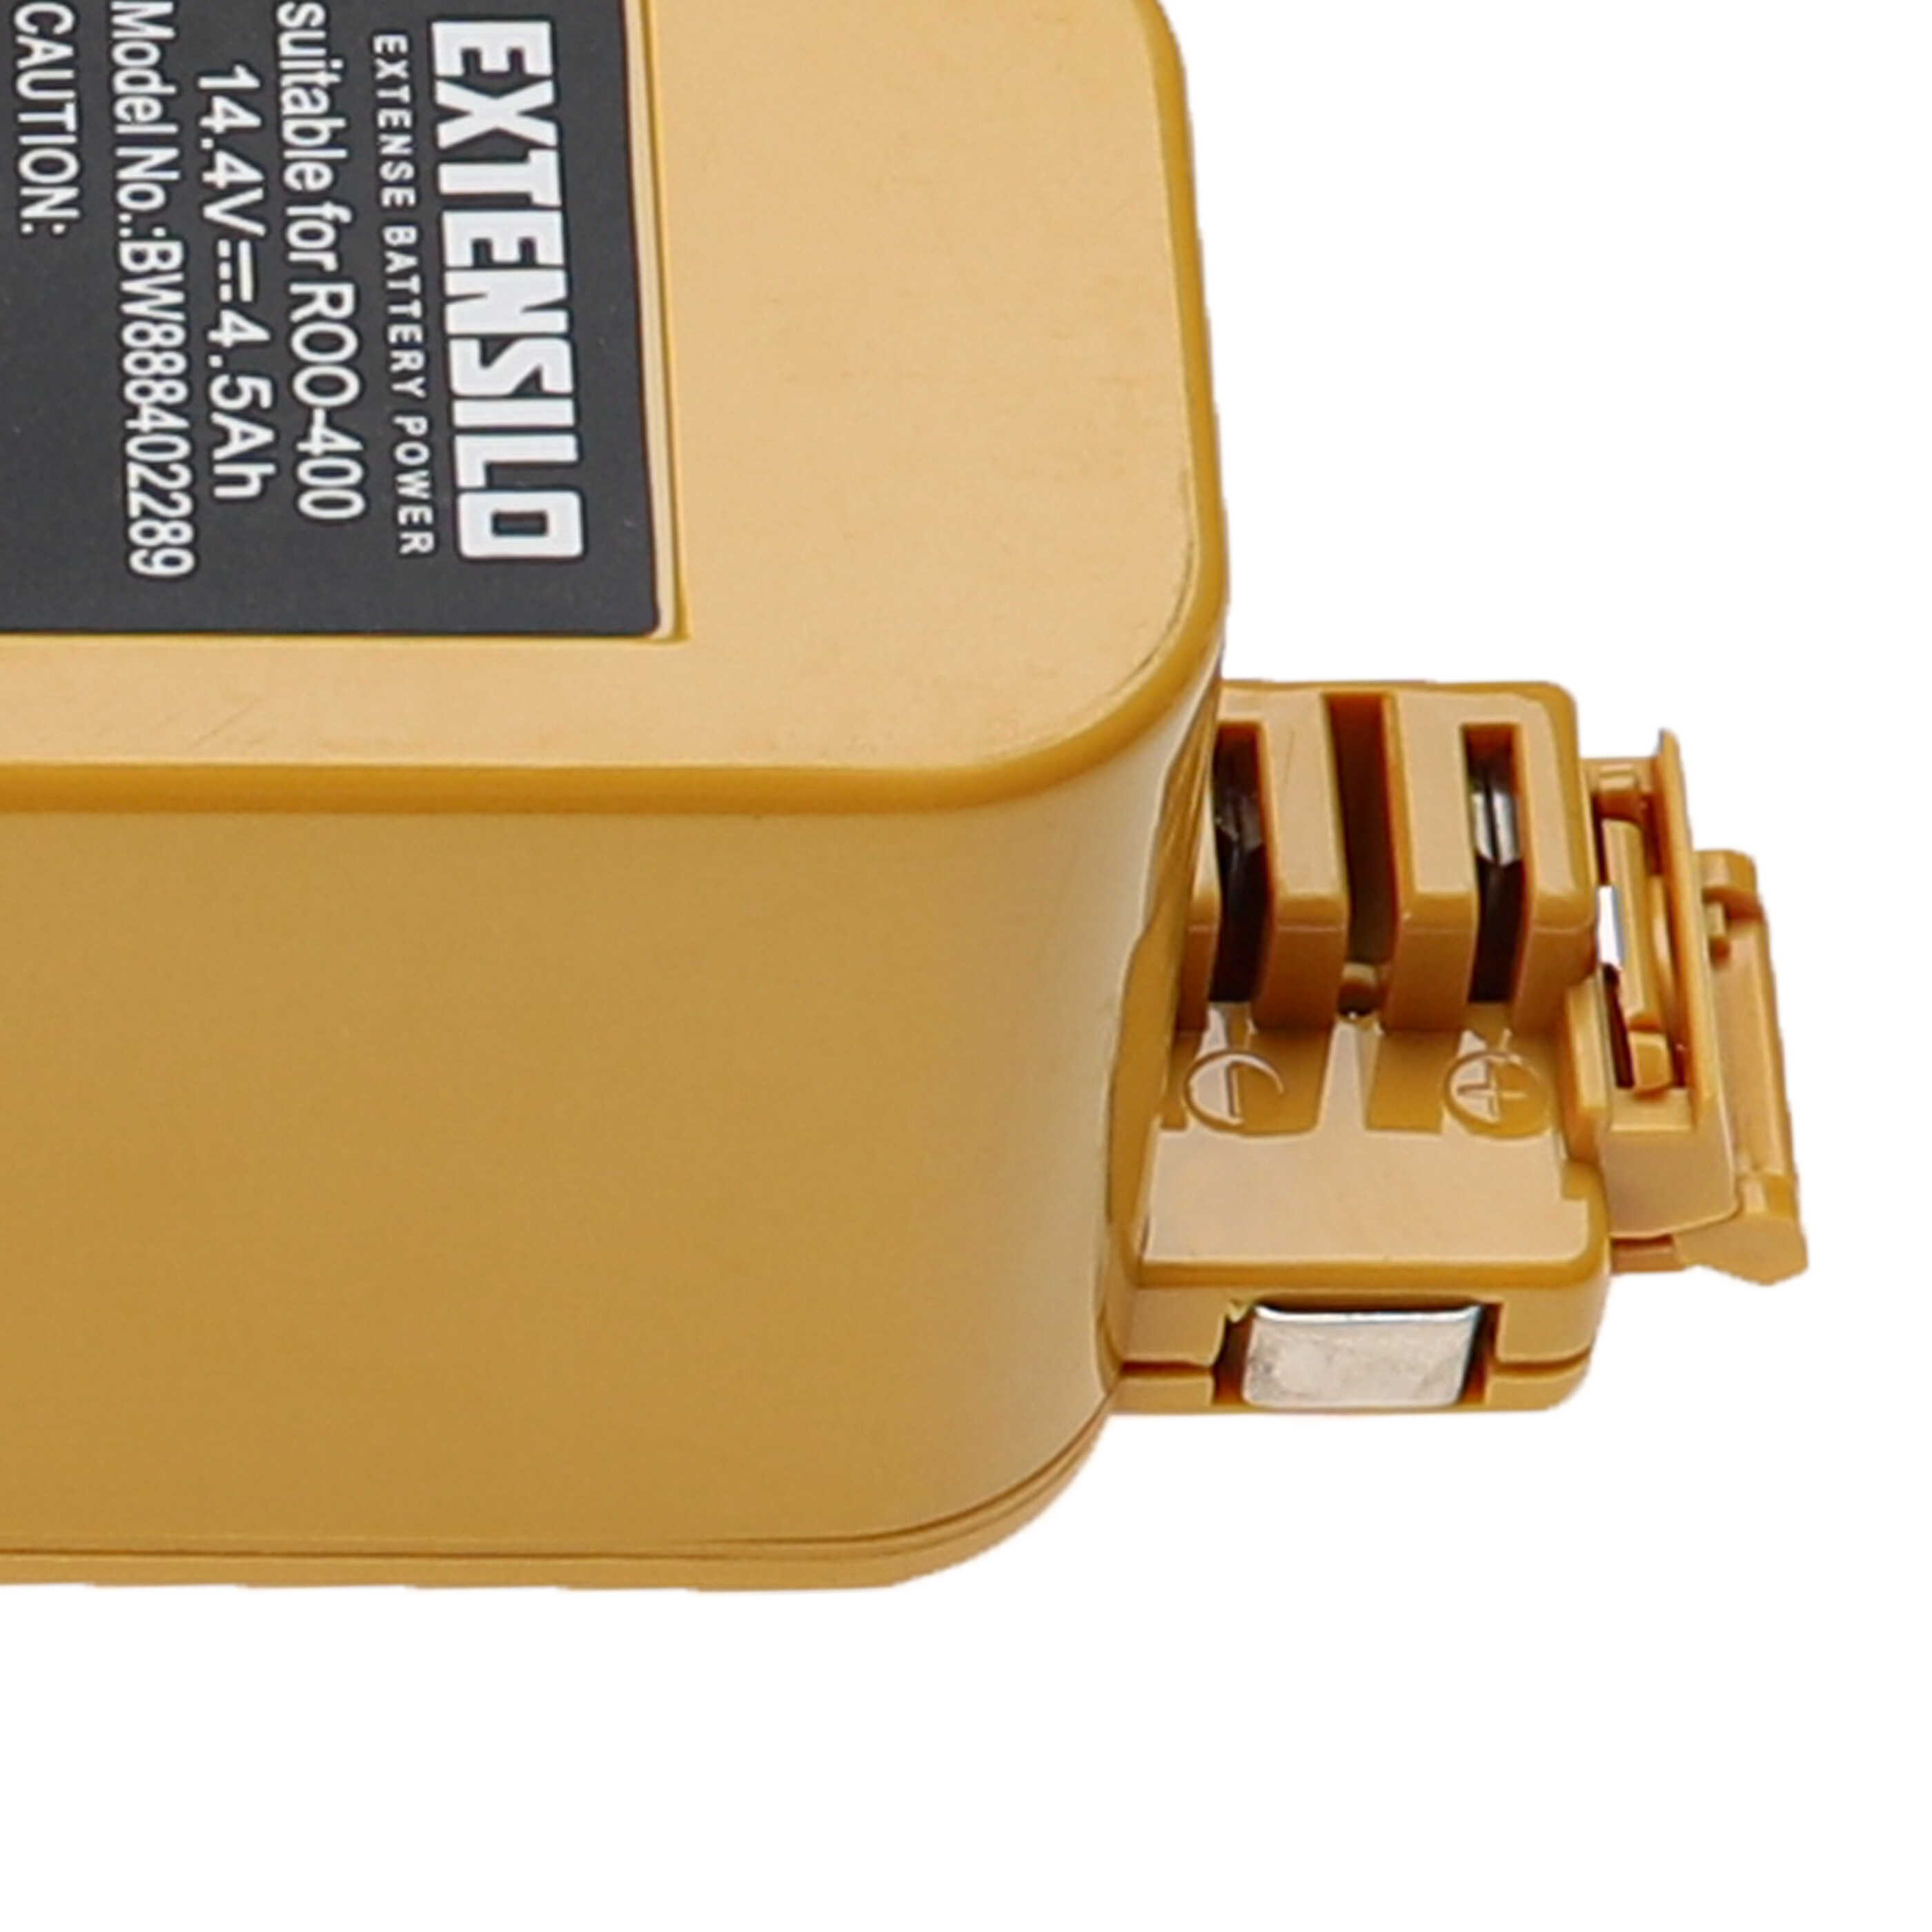 Batterie remplace APS 4905, NC-3493-919, 11700, 17373 pour robot aspirateur - 4500mAh 14,4V NiMH